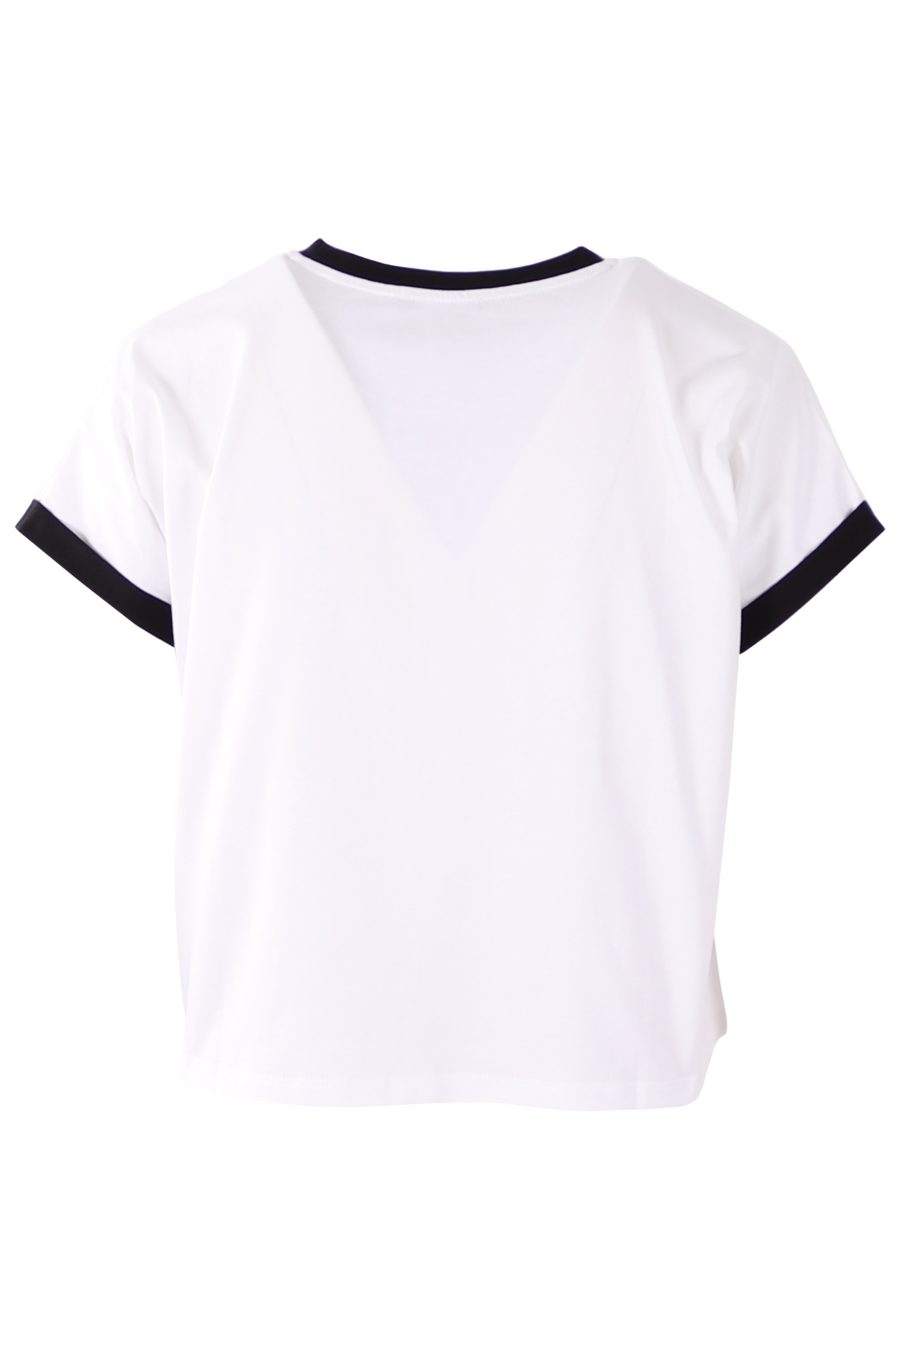 Balmain T-Shirt weiß mit schwarz beflocktem Logo - 236b191e17492d431c26d6287762905fe5ed4fc6